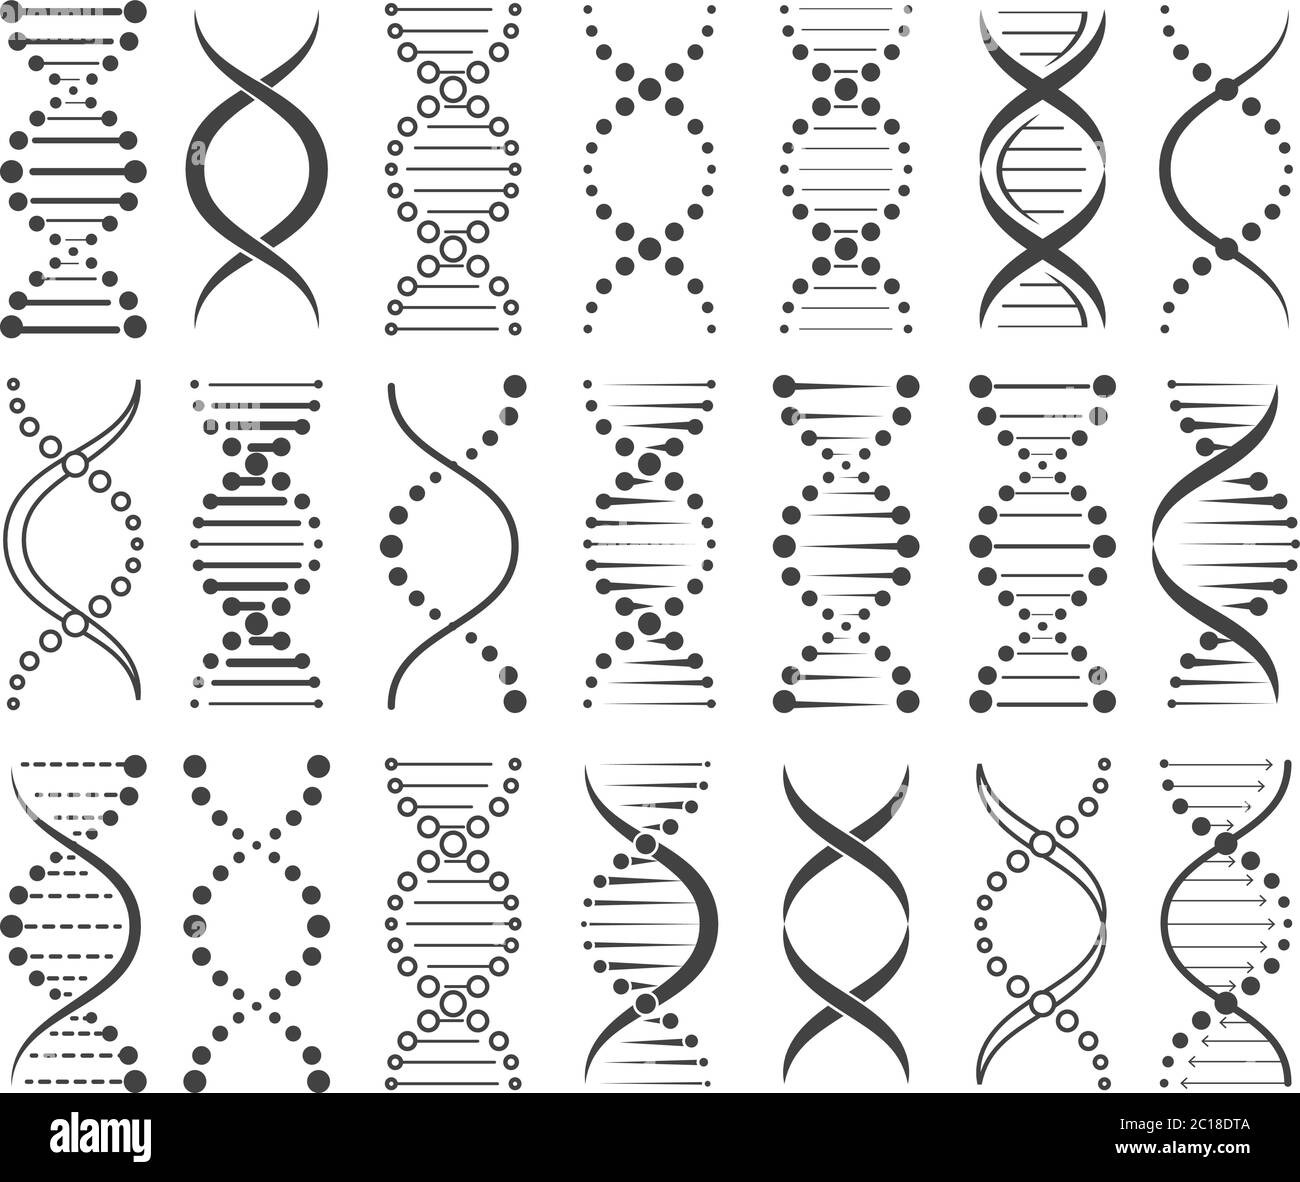 Structure de l'esquisse des chromosomes Illustration de Vecteur